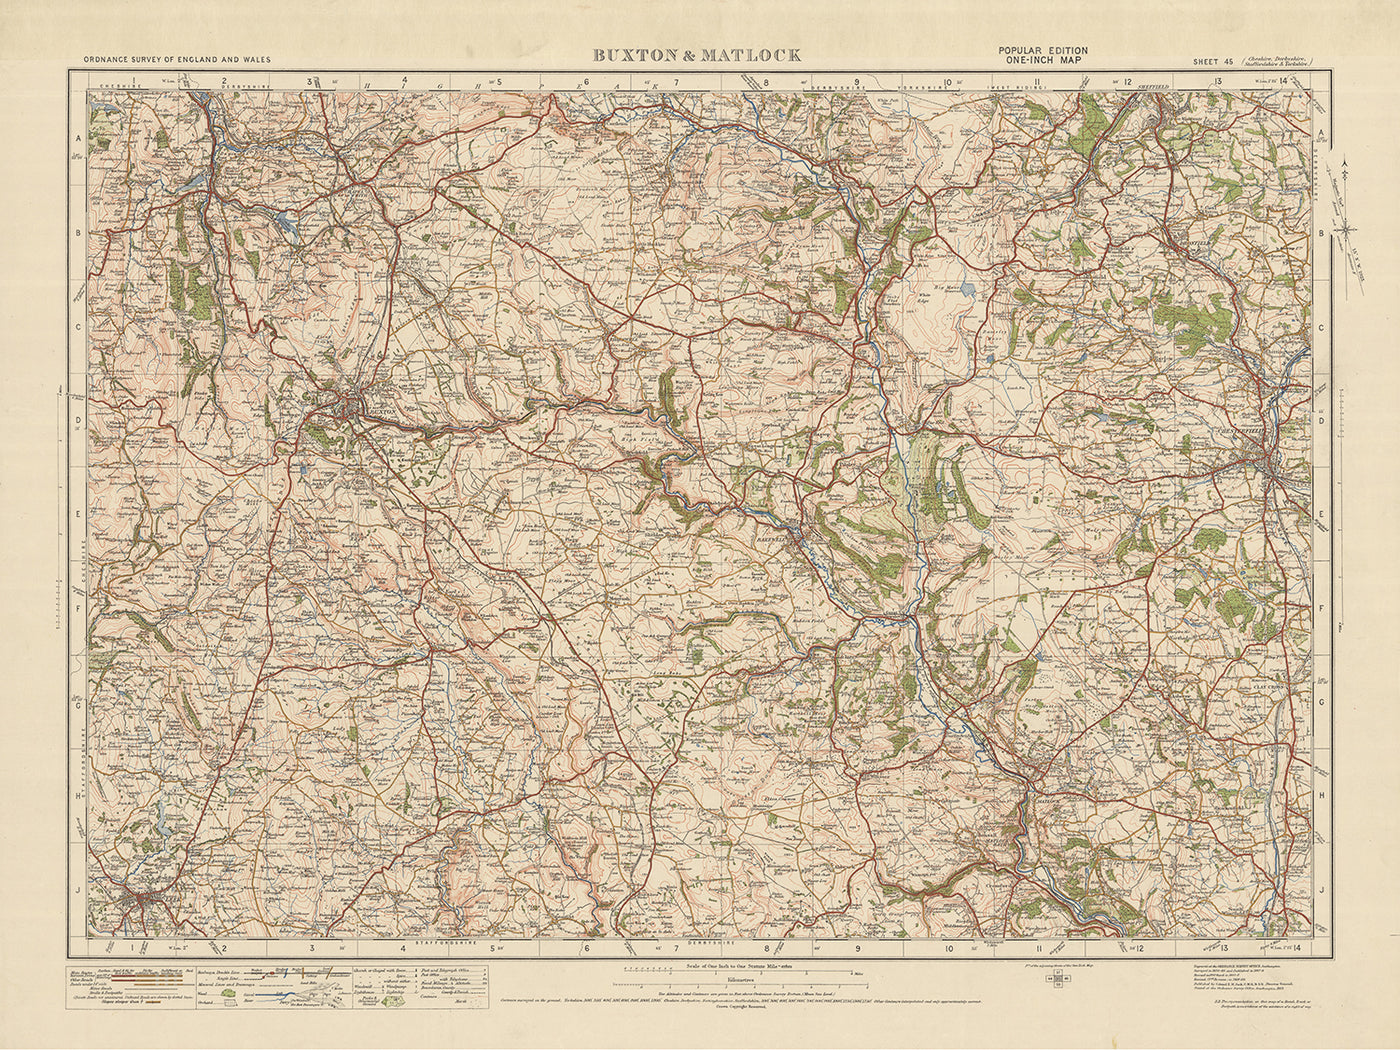 Carte Old Ordnance Survey, feuille 45 - Buxton & Matlock, 1925 : Leek, Chesterfield, Bakewell, Chapel-en-le-Frith et parc national de Peak District